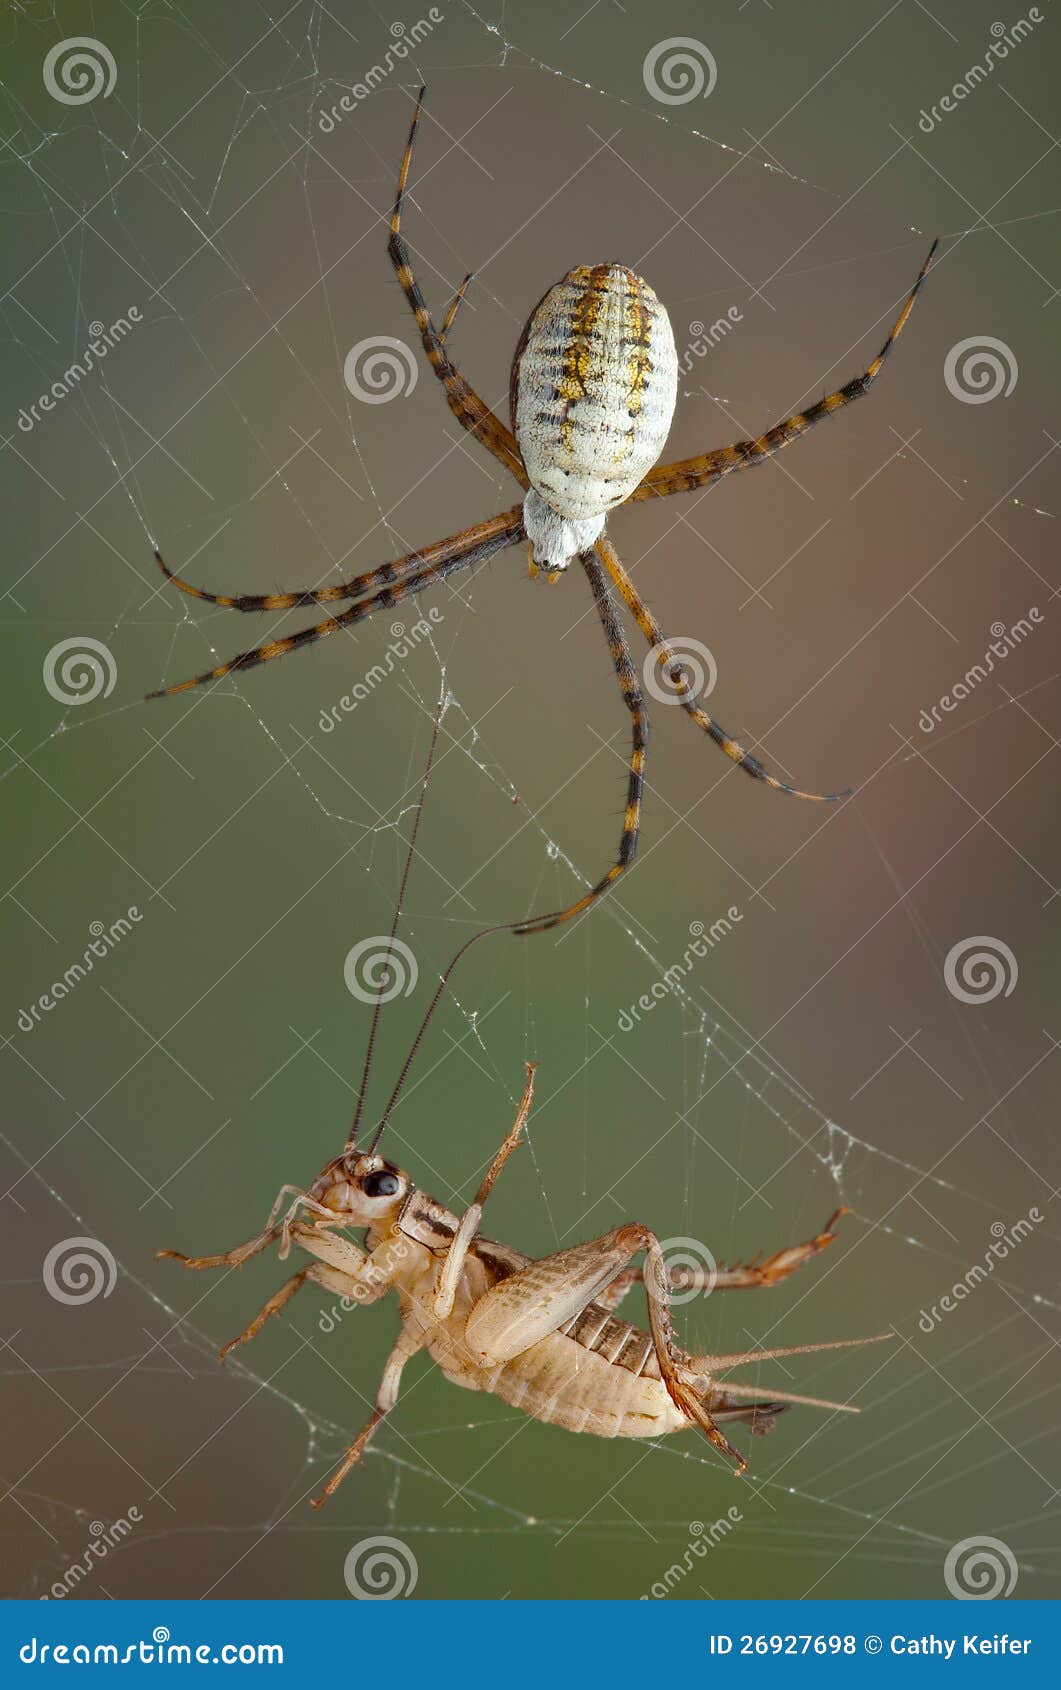 web cricket